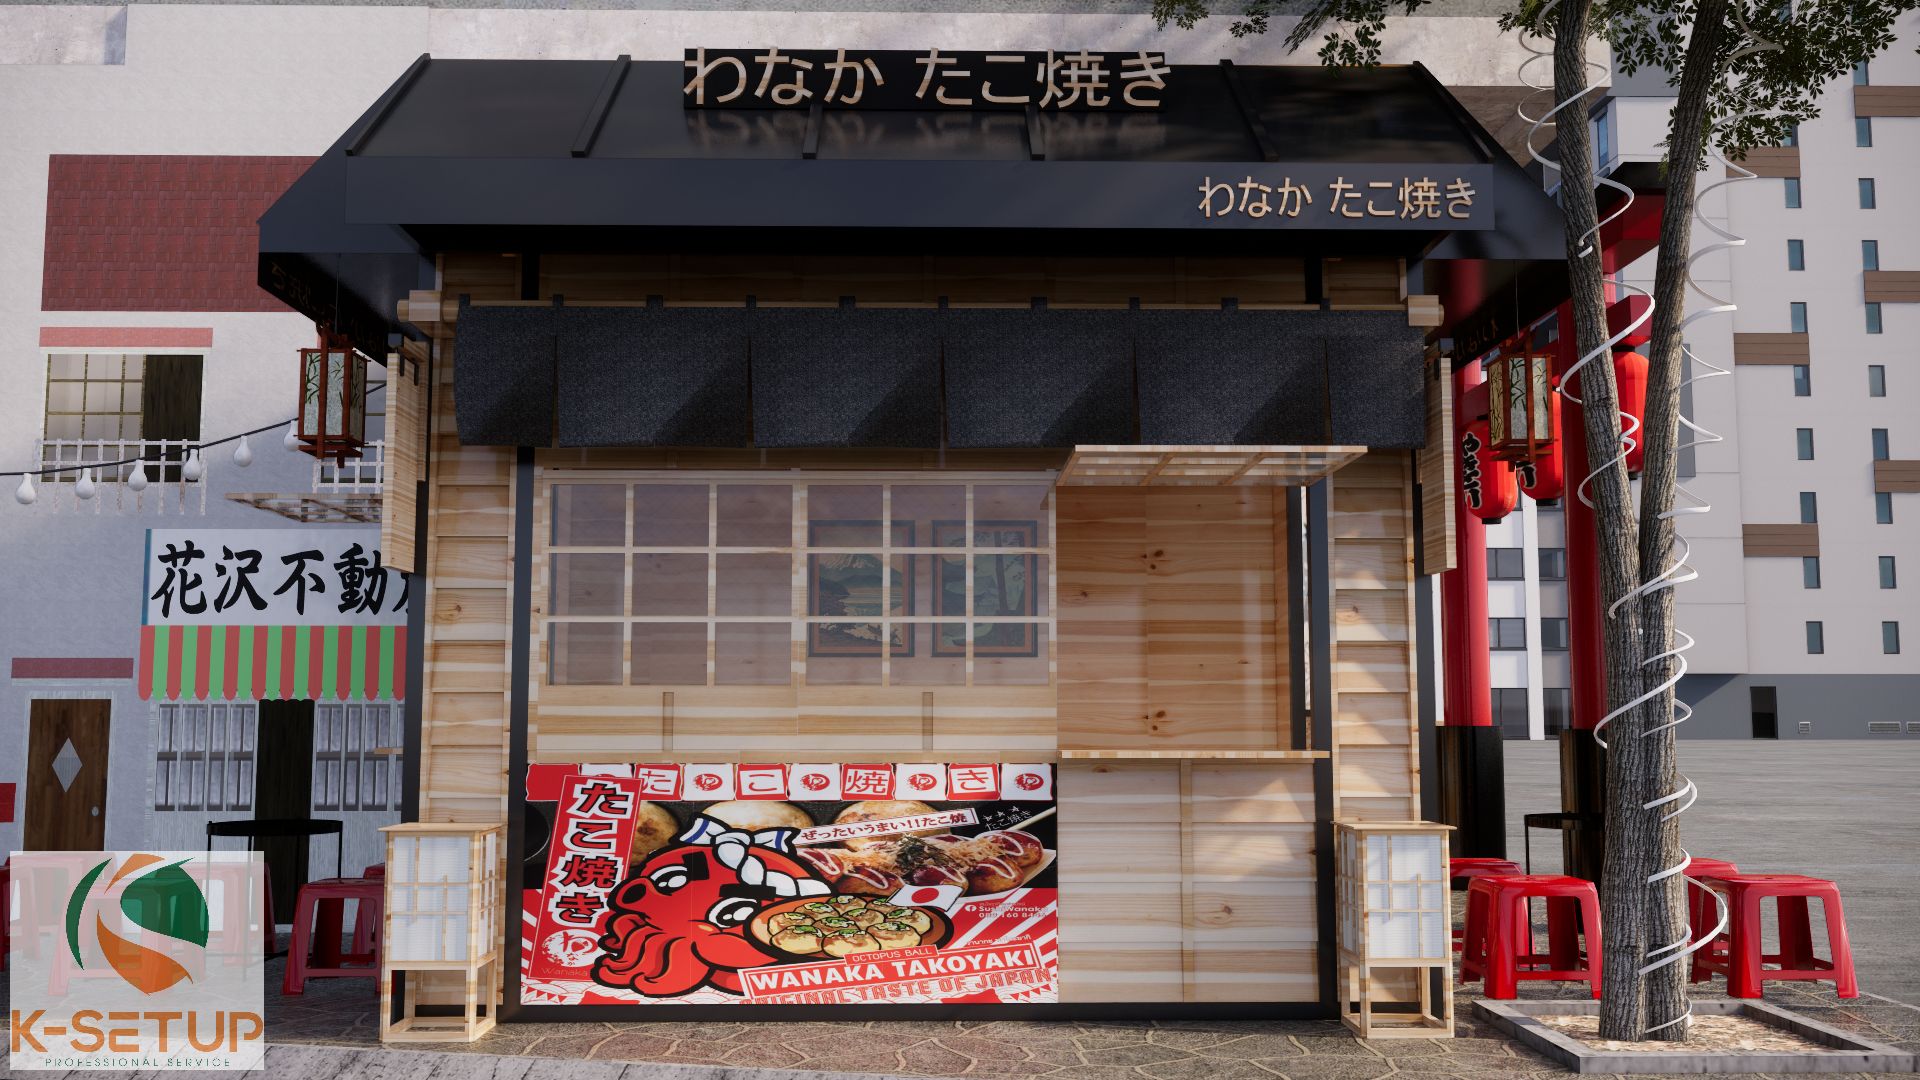 Cửa hàng được thiết kế theo phong cách Nhật Bản.